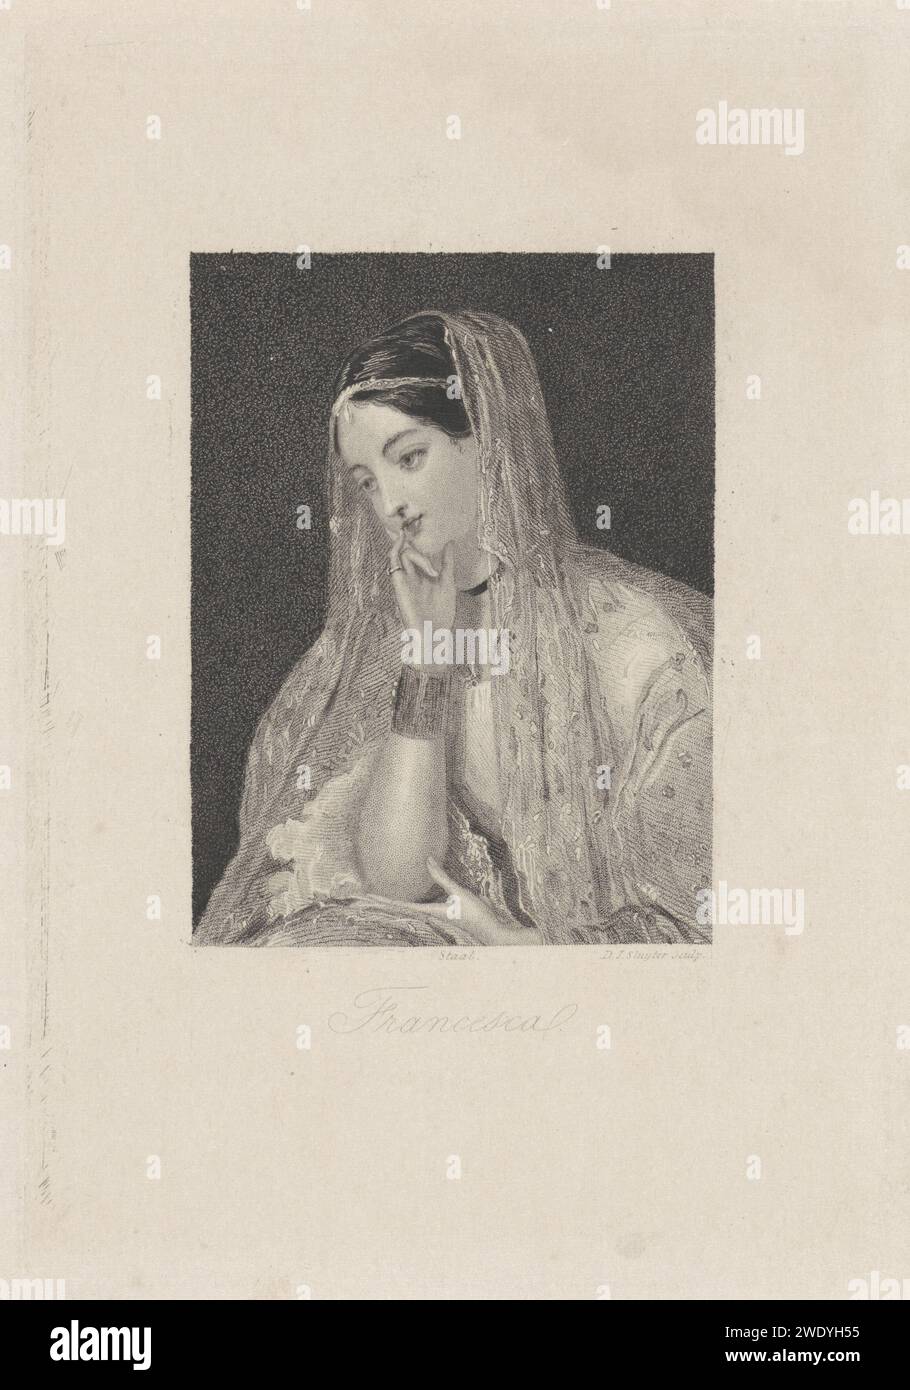 Peeling jeune femme avec voile, Dirk Jurriaan Sluyter, 1826 - 1886 imprimer Amsterdam voile en papier (+ dentelle utilisée pour les vêtements) Banque D'Images